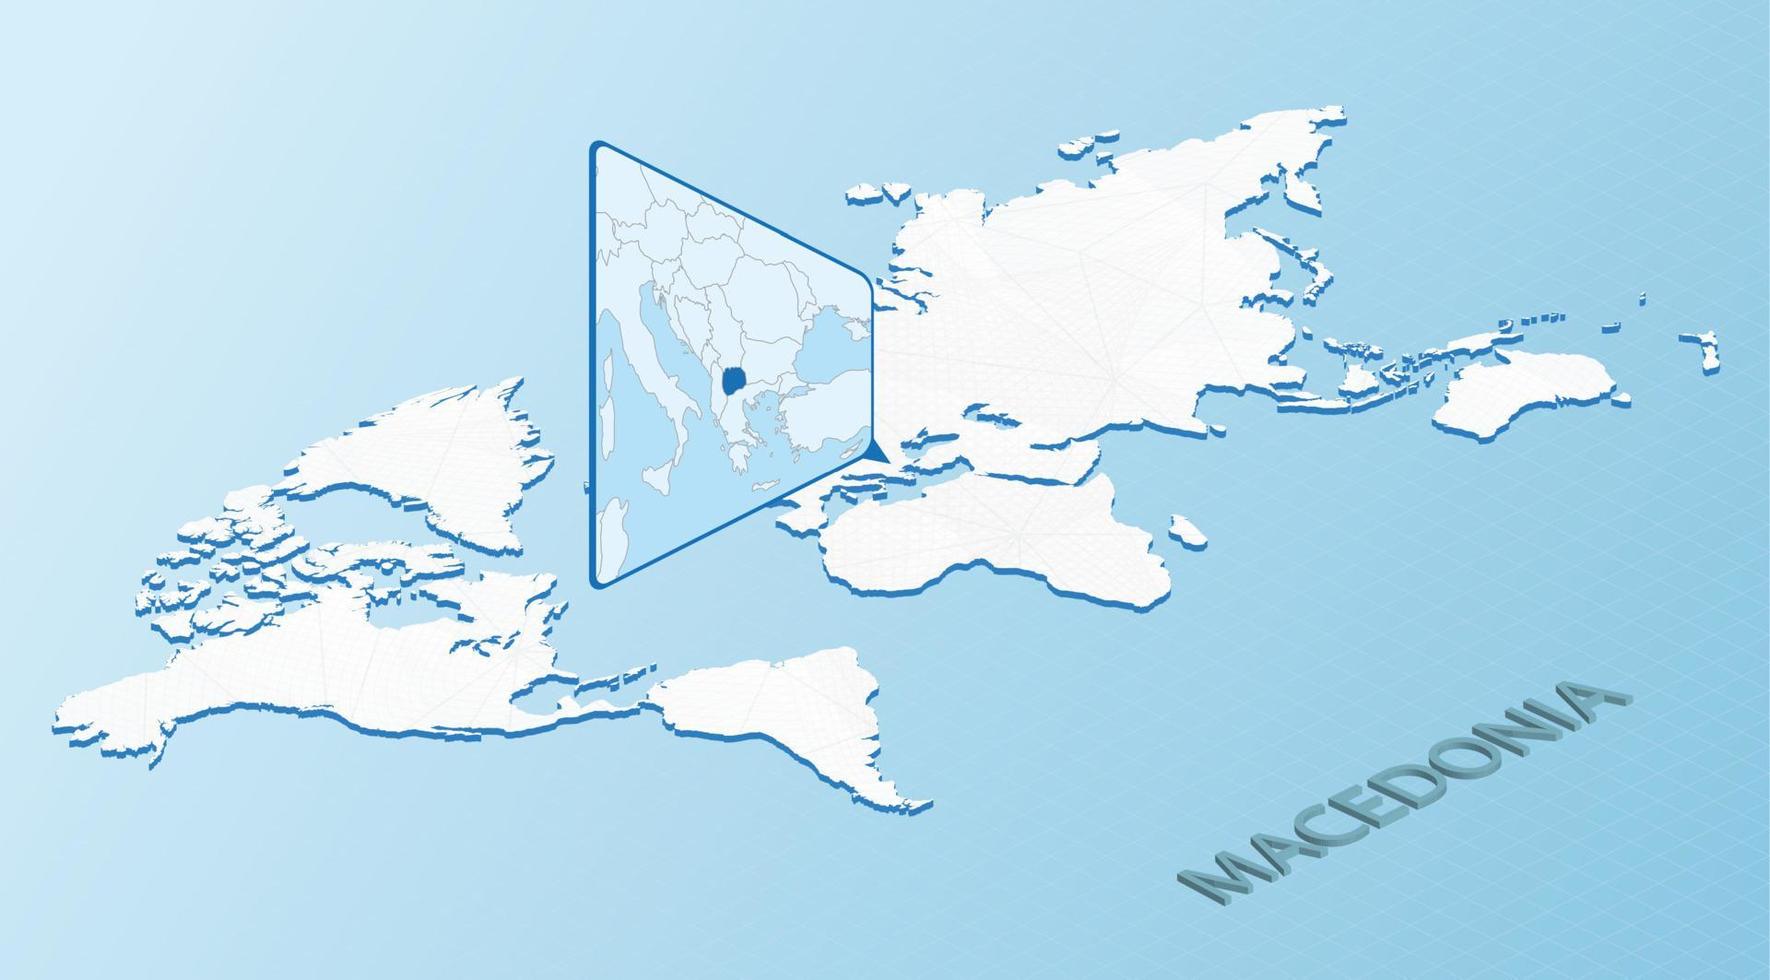 carte du monde en style isométrique avec carte détaillée de la macédoine. carte macédoine bleu clair avec carte du monde abstraite. vecteur